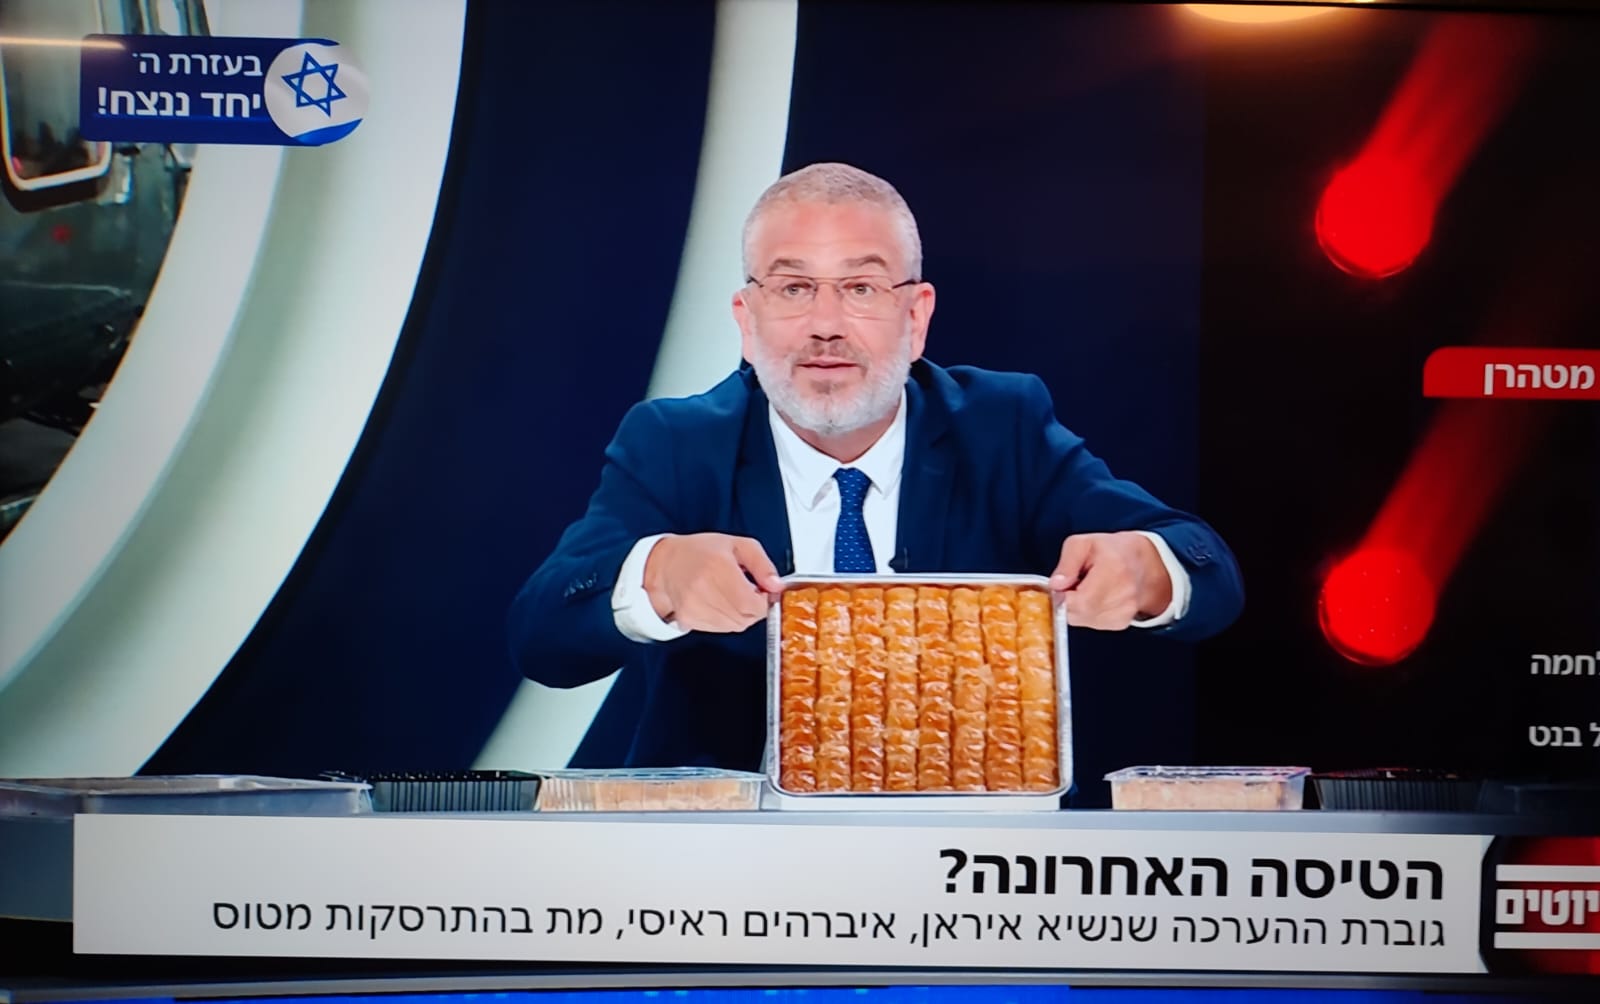 توزيع حلويات على الهواء مباشرة بقناة إسرائيلية “فرحا” بمصرع الرئيس الإيراني (شاهد)